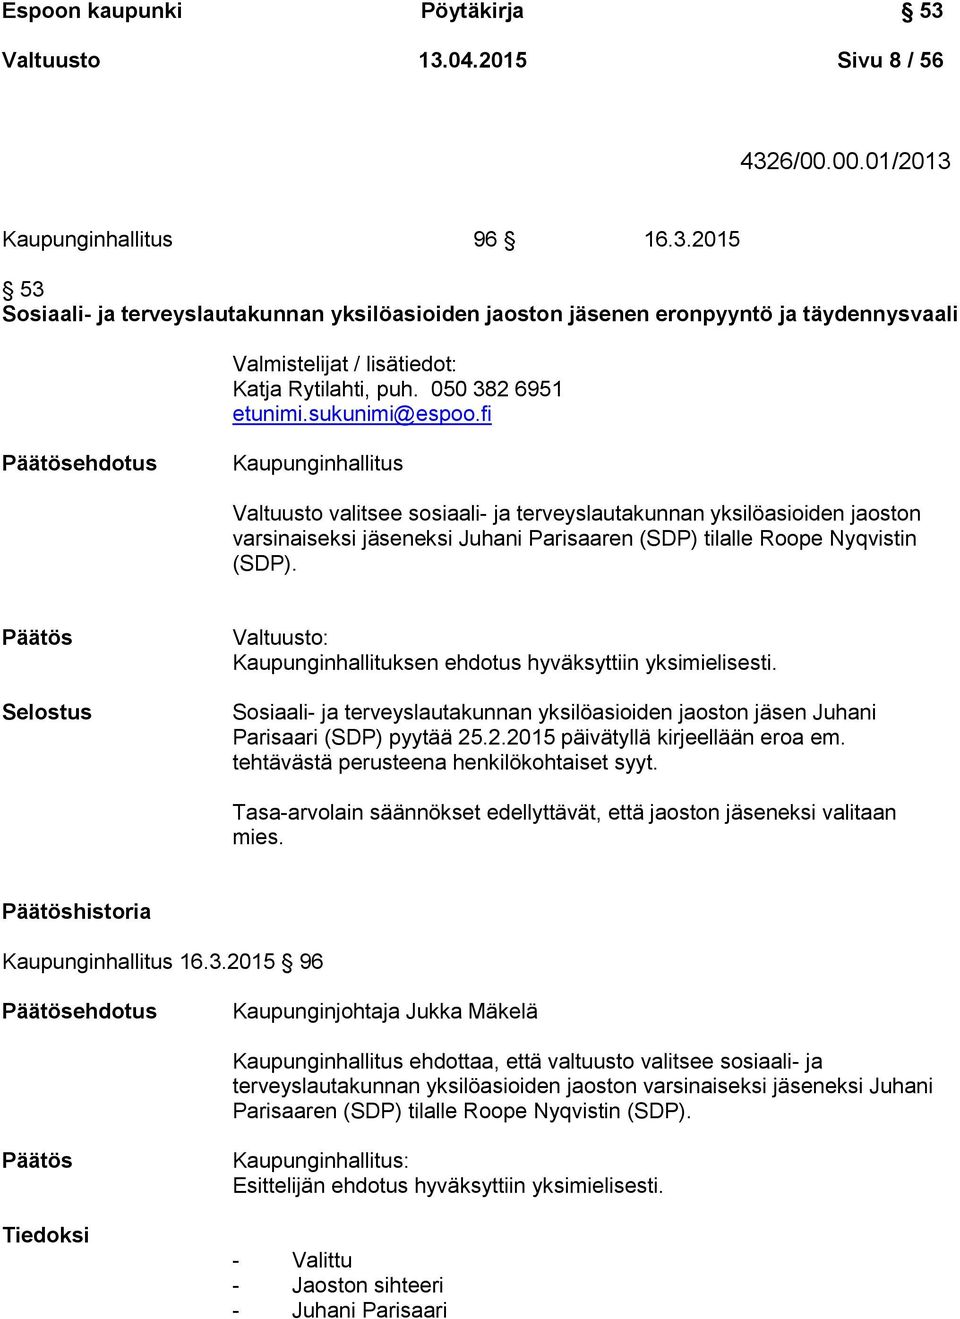 fi ehdotus Kaupunginhallitus Valtuusto valitsee sosiaali- ja terveyslautakunnan yksilöasioiden jaoston varsinaiseksi jäseneksi Juhani Parisaaren (SDP) tilalle Roope Nyqvistin (SDP).